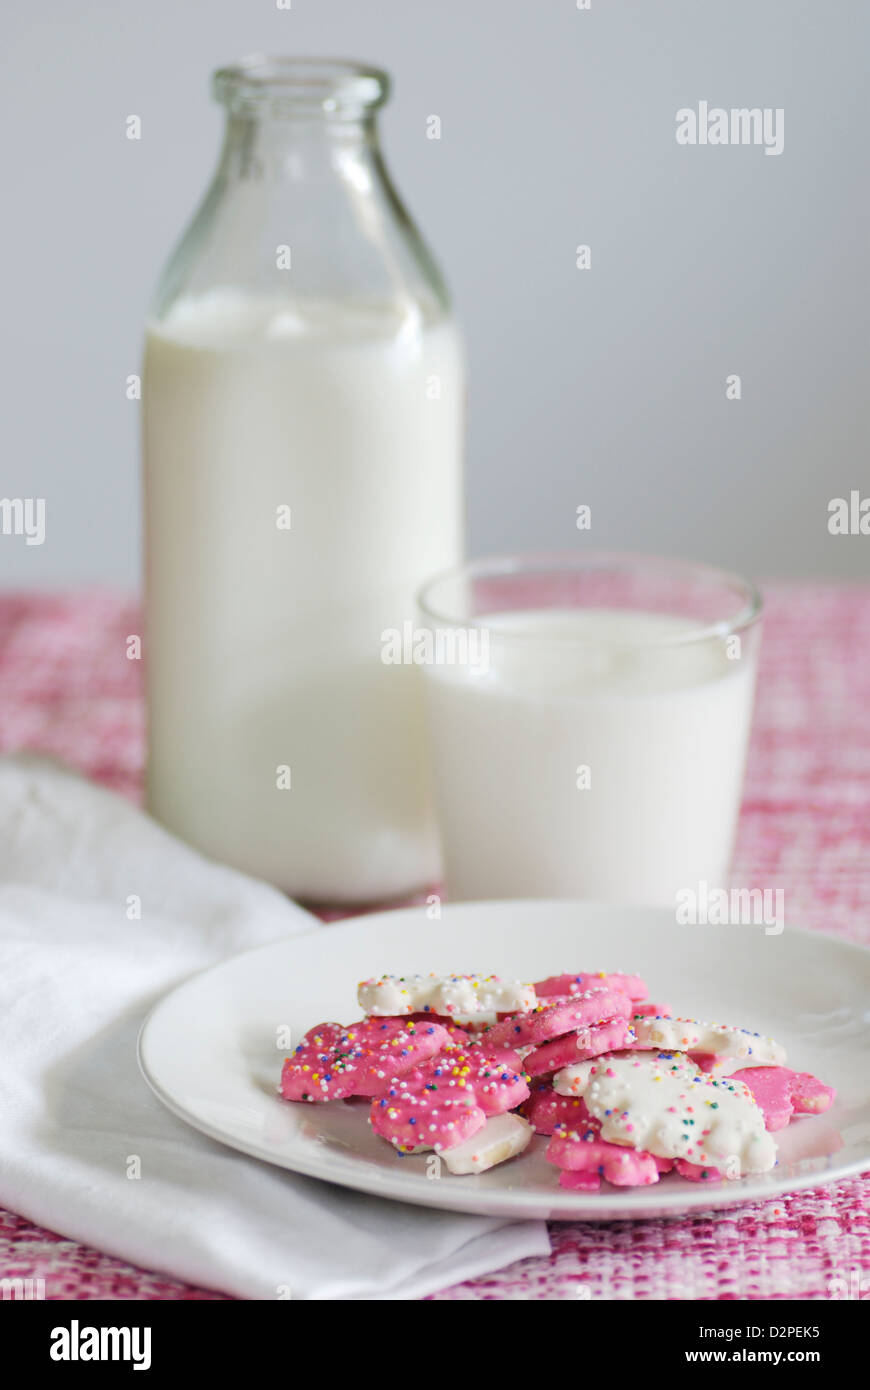 Rosa und weiß gefrostet Tier Cookies mit Streusel auf einem rosafarbenen und weißen Tweedstoff mit Flasche und Glas Kuhmilch Stockfoto